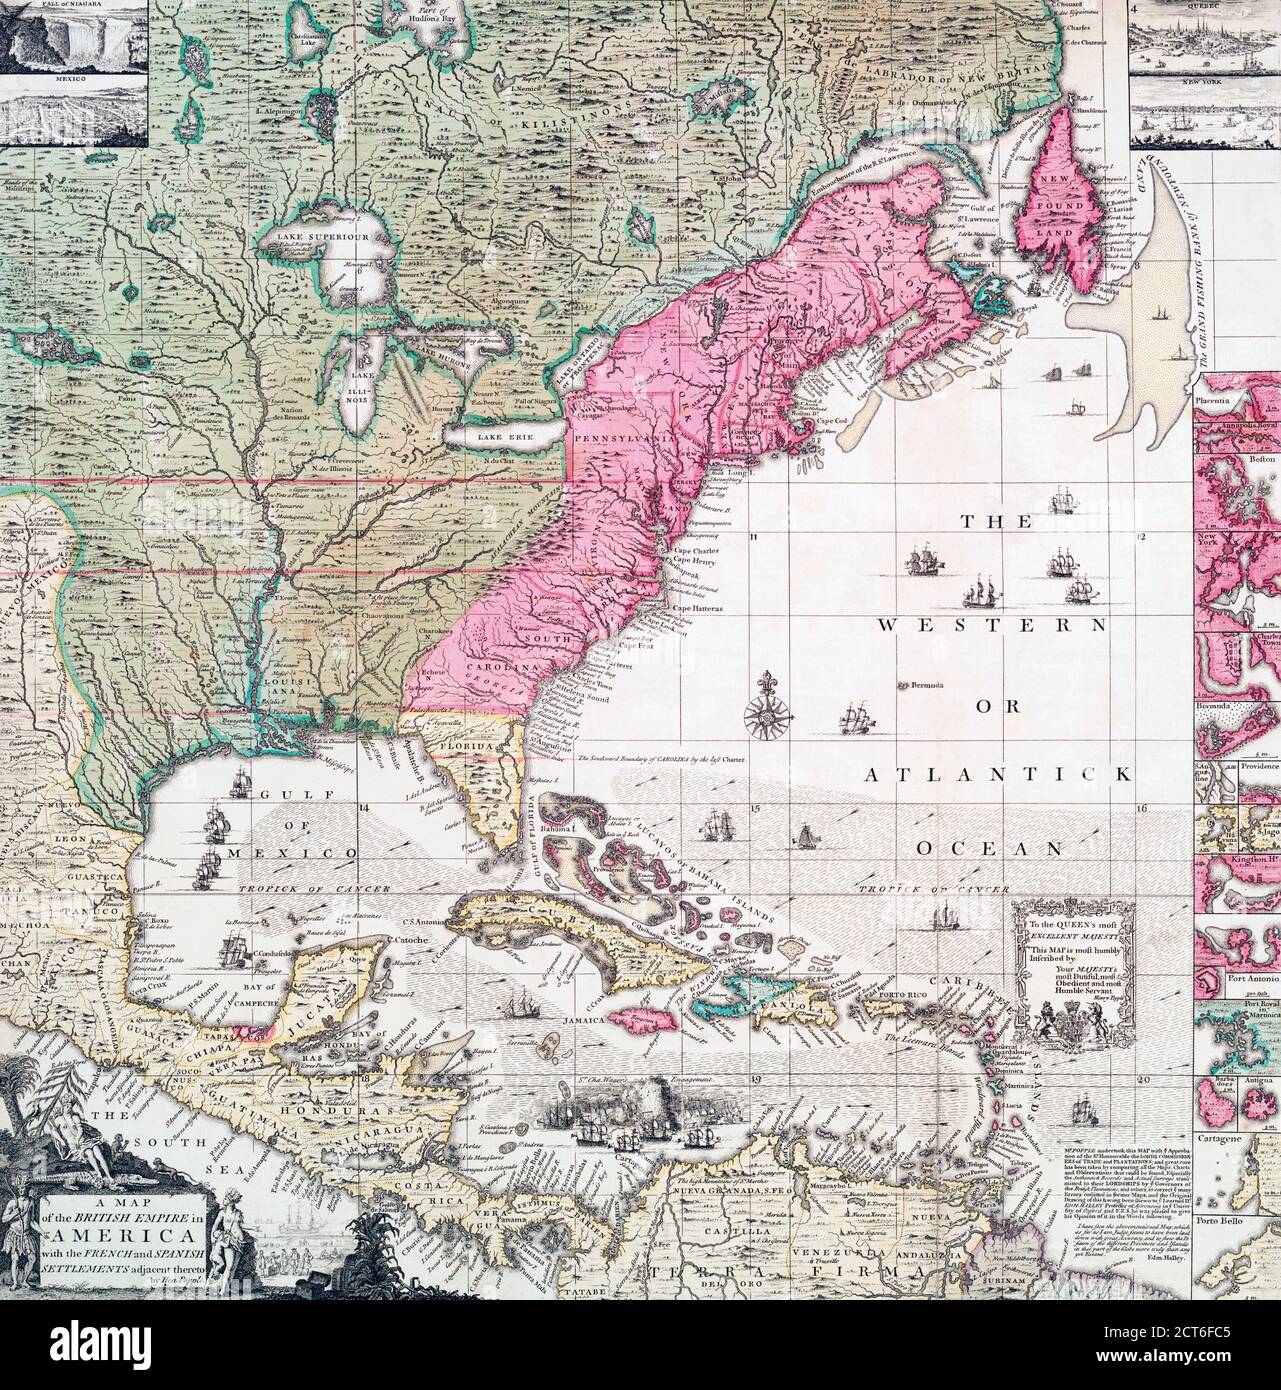 Eine Karte des Britischen Imperiums in Nordamerika aus dem frühen 18. Jahrhundert, die auch französische, spanische und niederländische Siedlungen zeigt. Nach einem Werk des britischen Kartographen Henry Popple, ? - gestorben 1743. Stockfoto